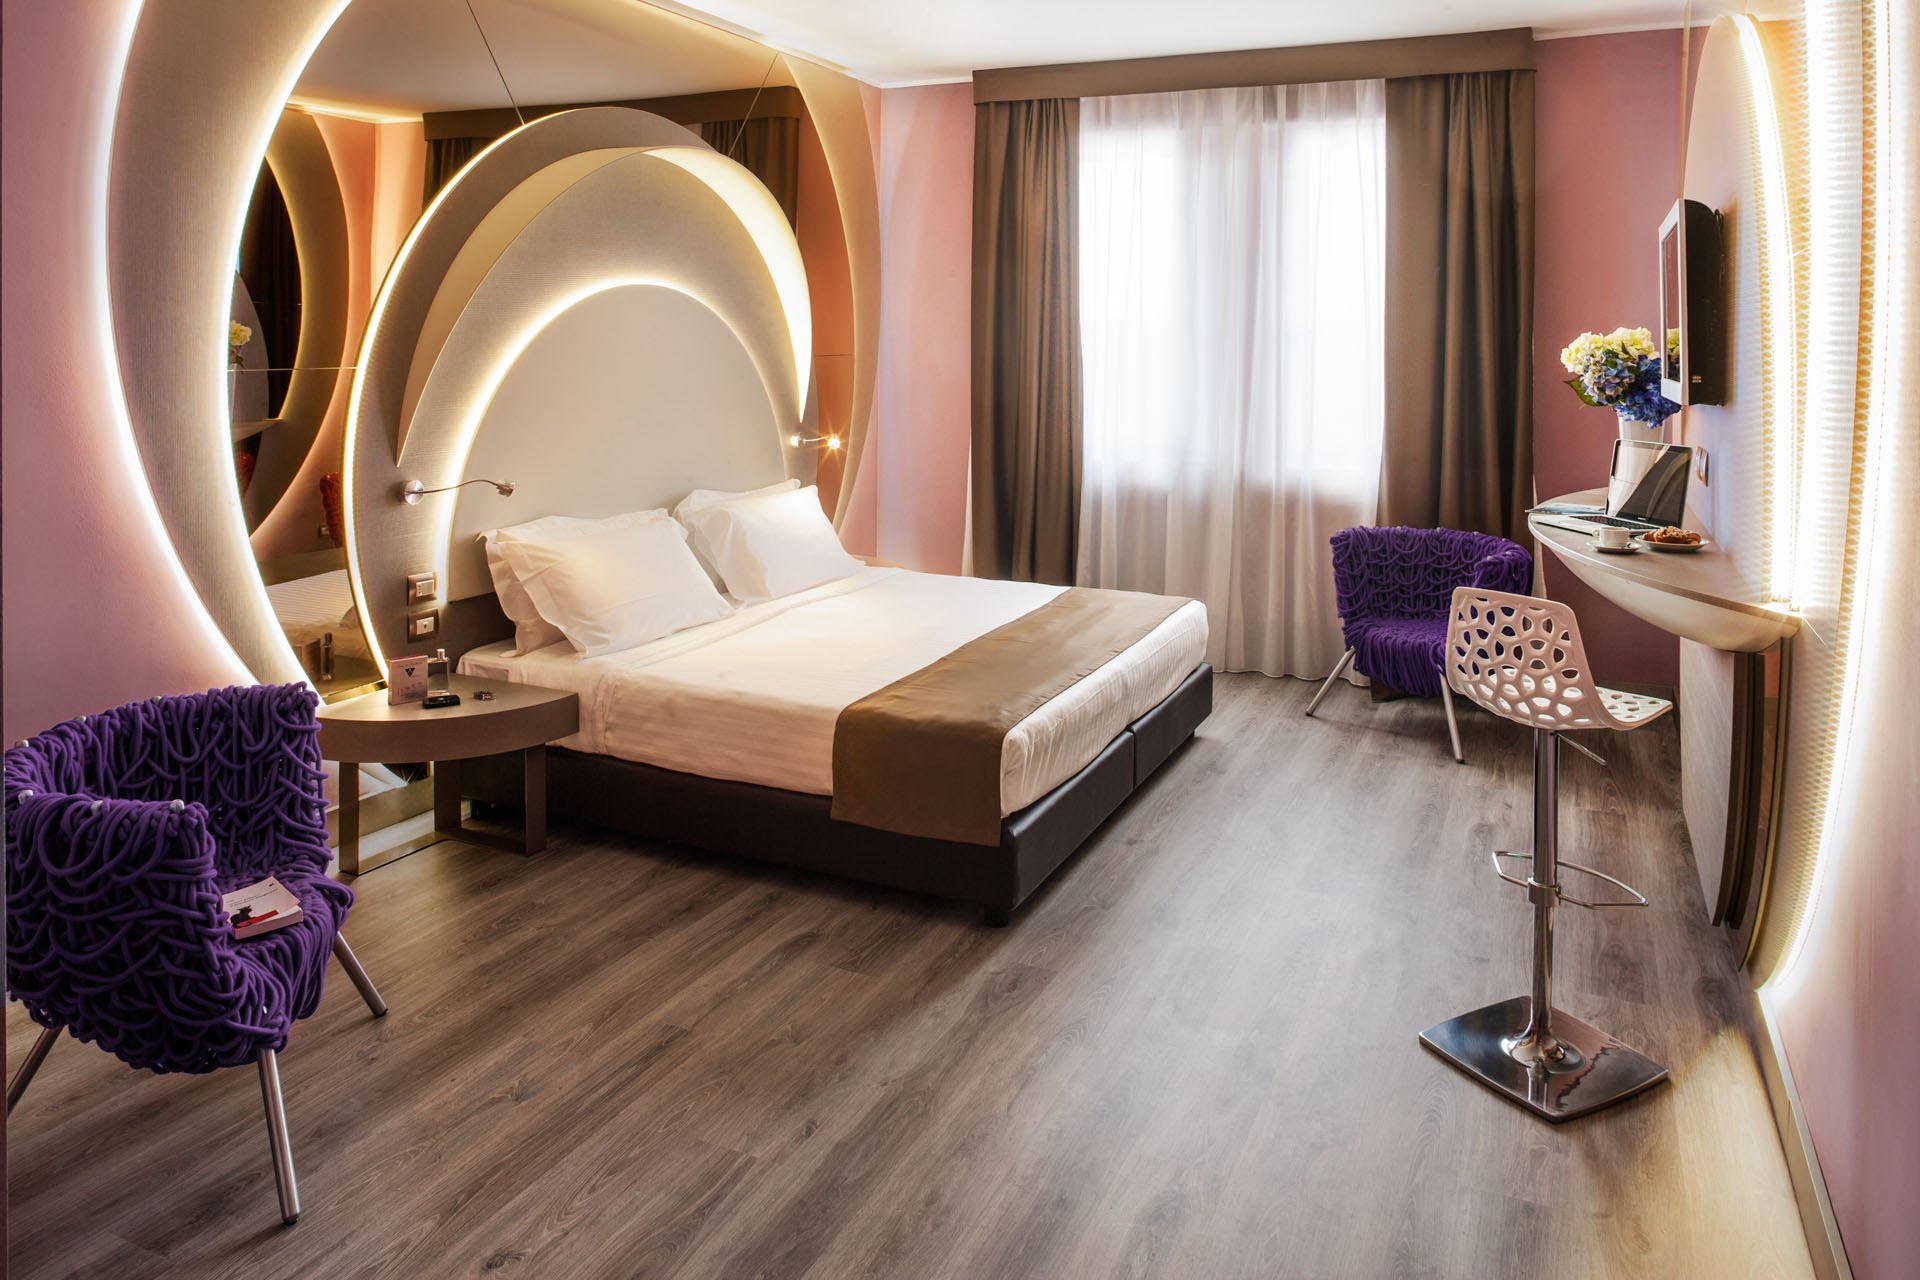 camera letto luxury hotel da vinci milano 4 stelle lavoro realizzato dal gruppo rodi 